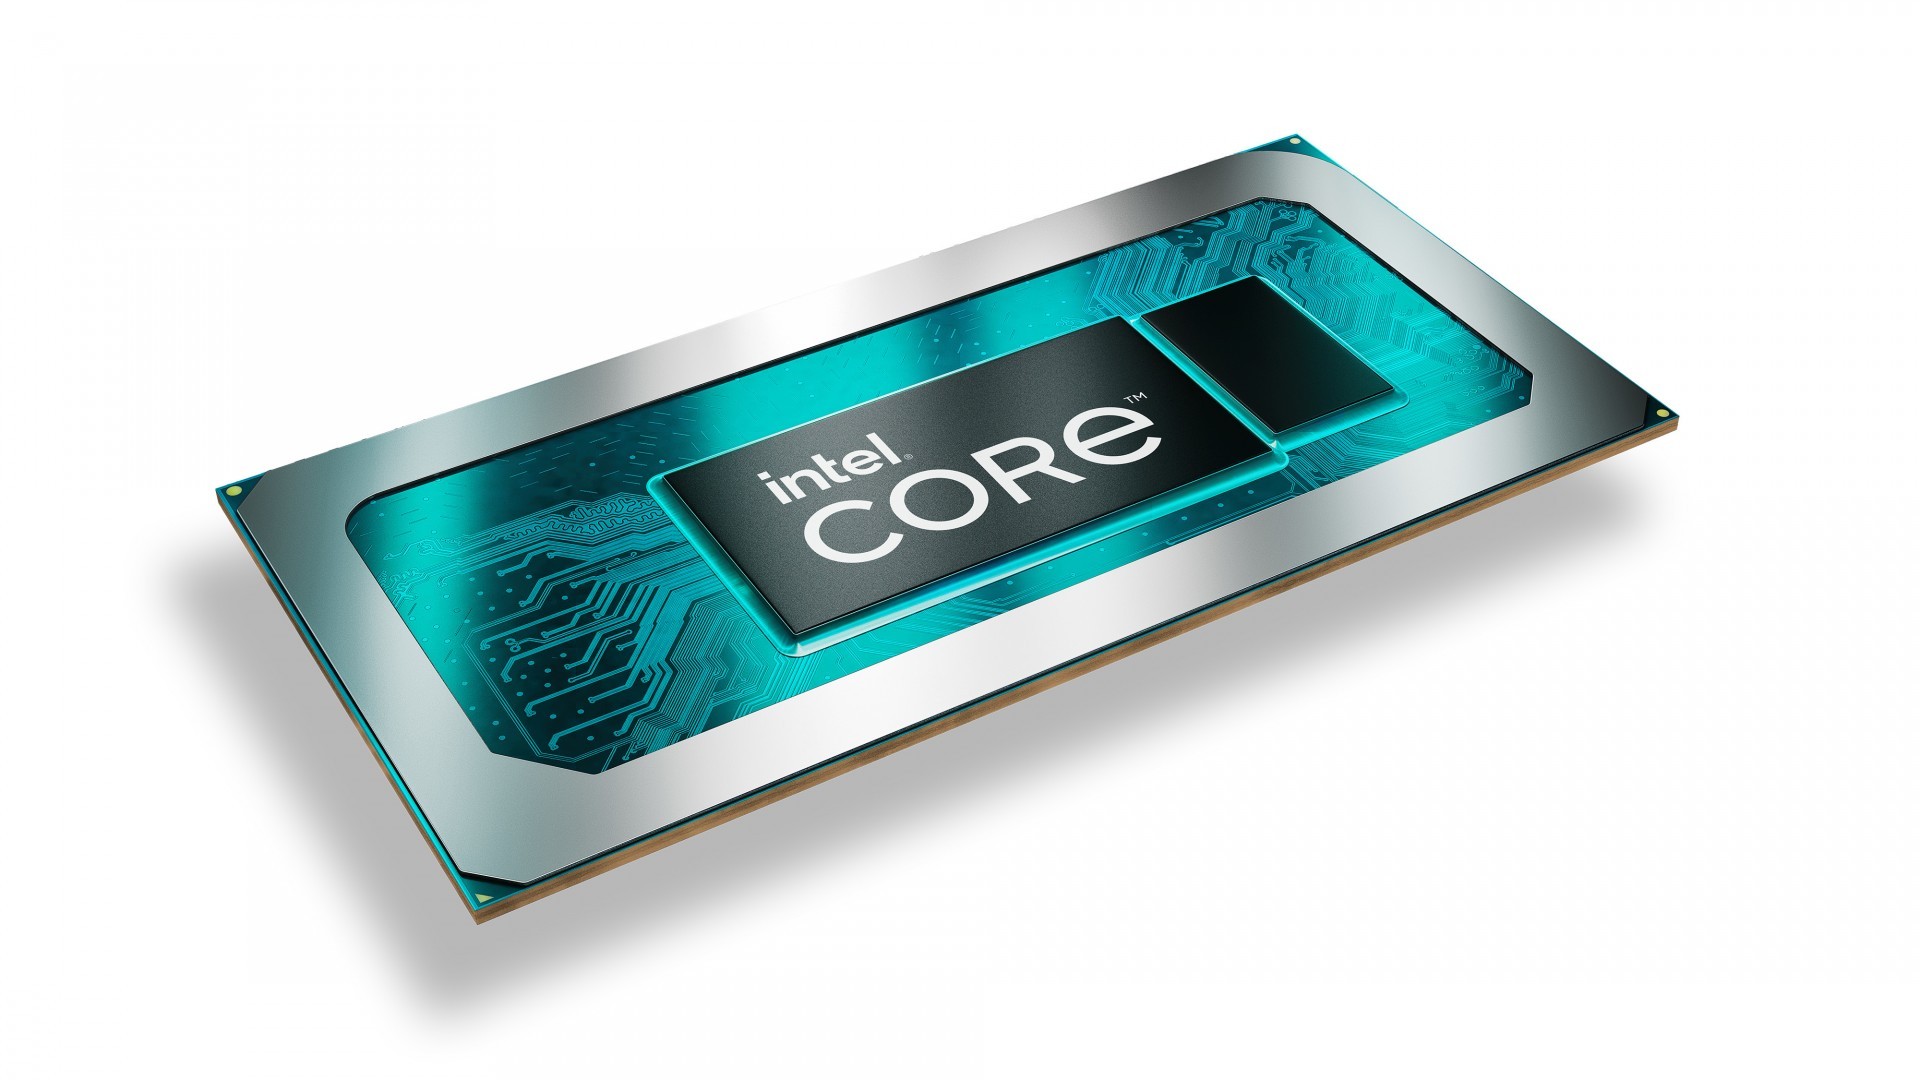 第 12 代 Intel Core 筆電處理器正式推出  預估將有超過 250 款相關筆電